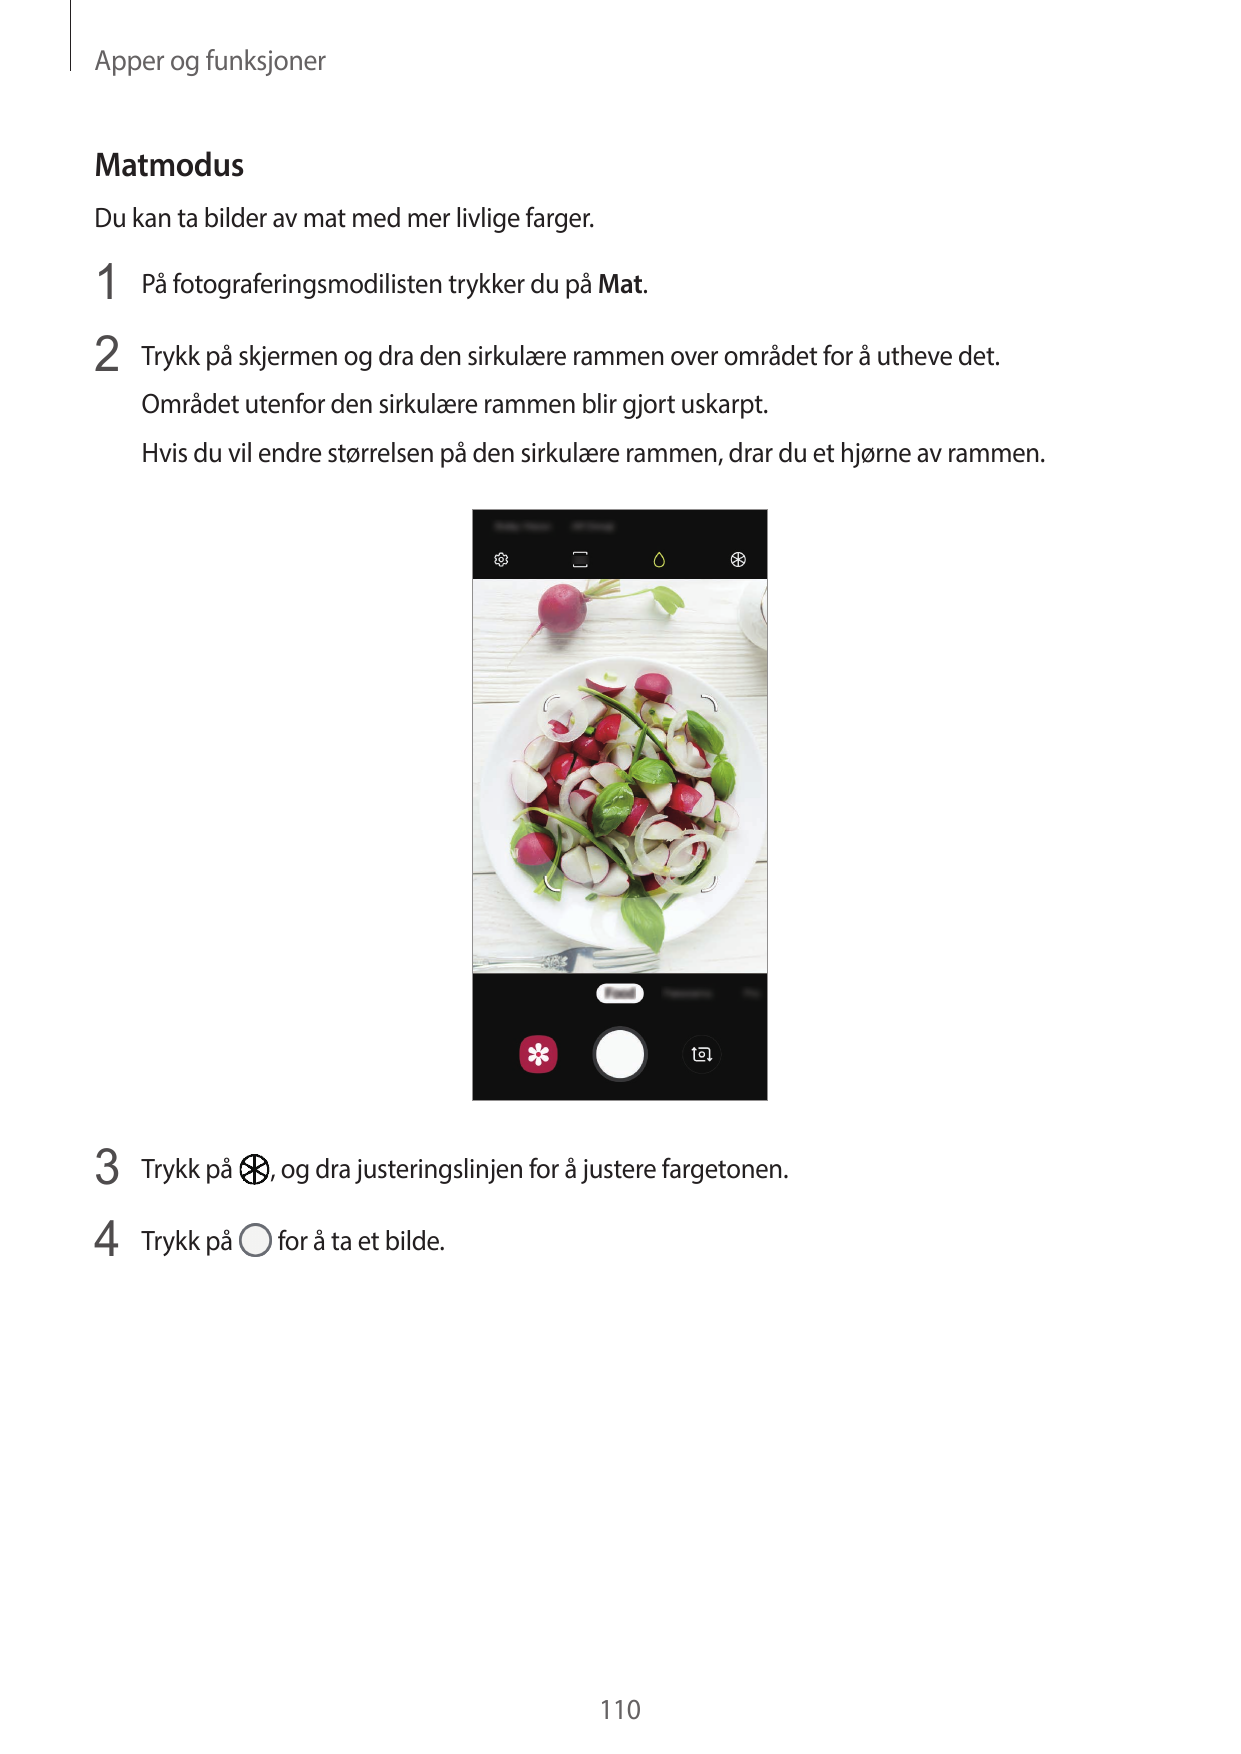 Apper og funksjonerMatmodusDu kan ta bilder av mat med mer livlige farger.1 På fotograferingsmodilisten trykker du på Mat.2 Tryk